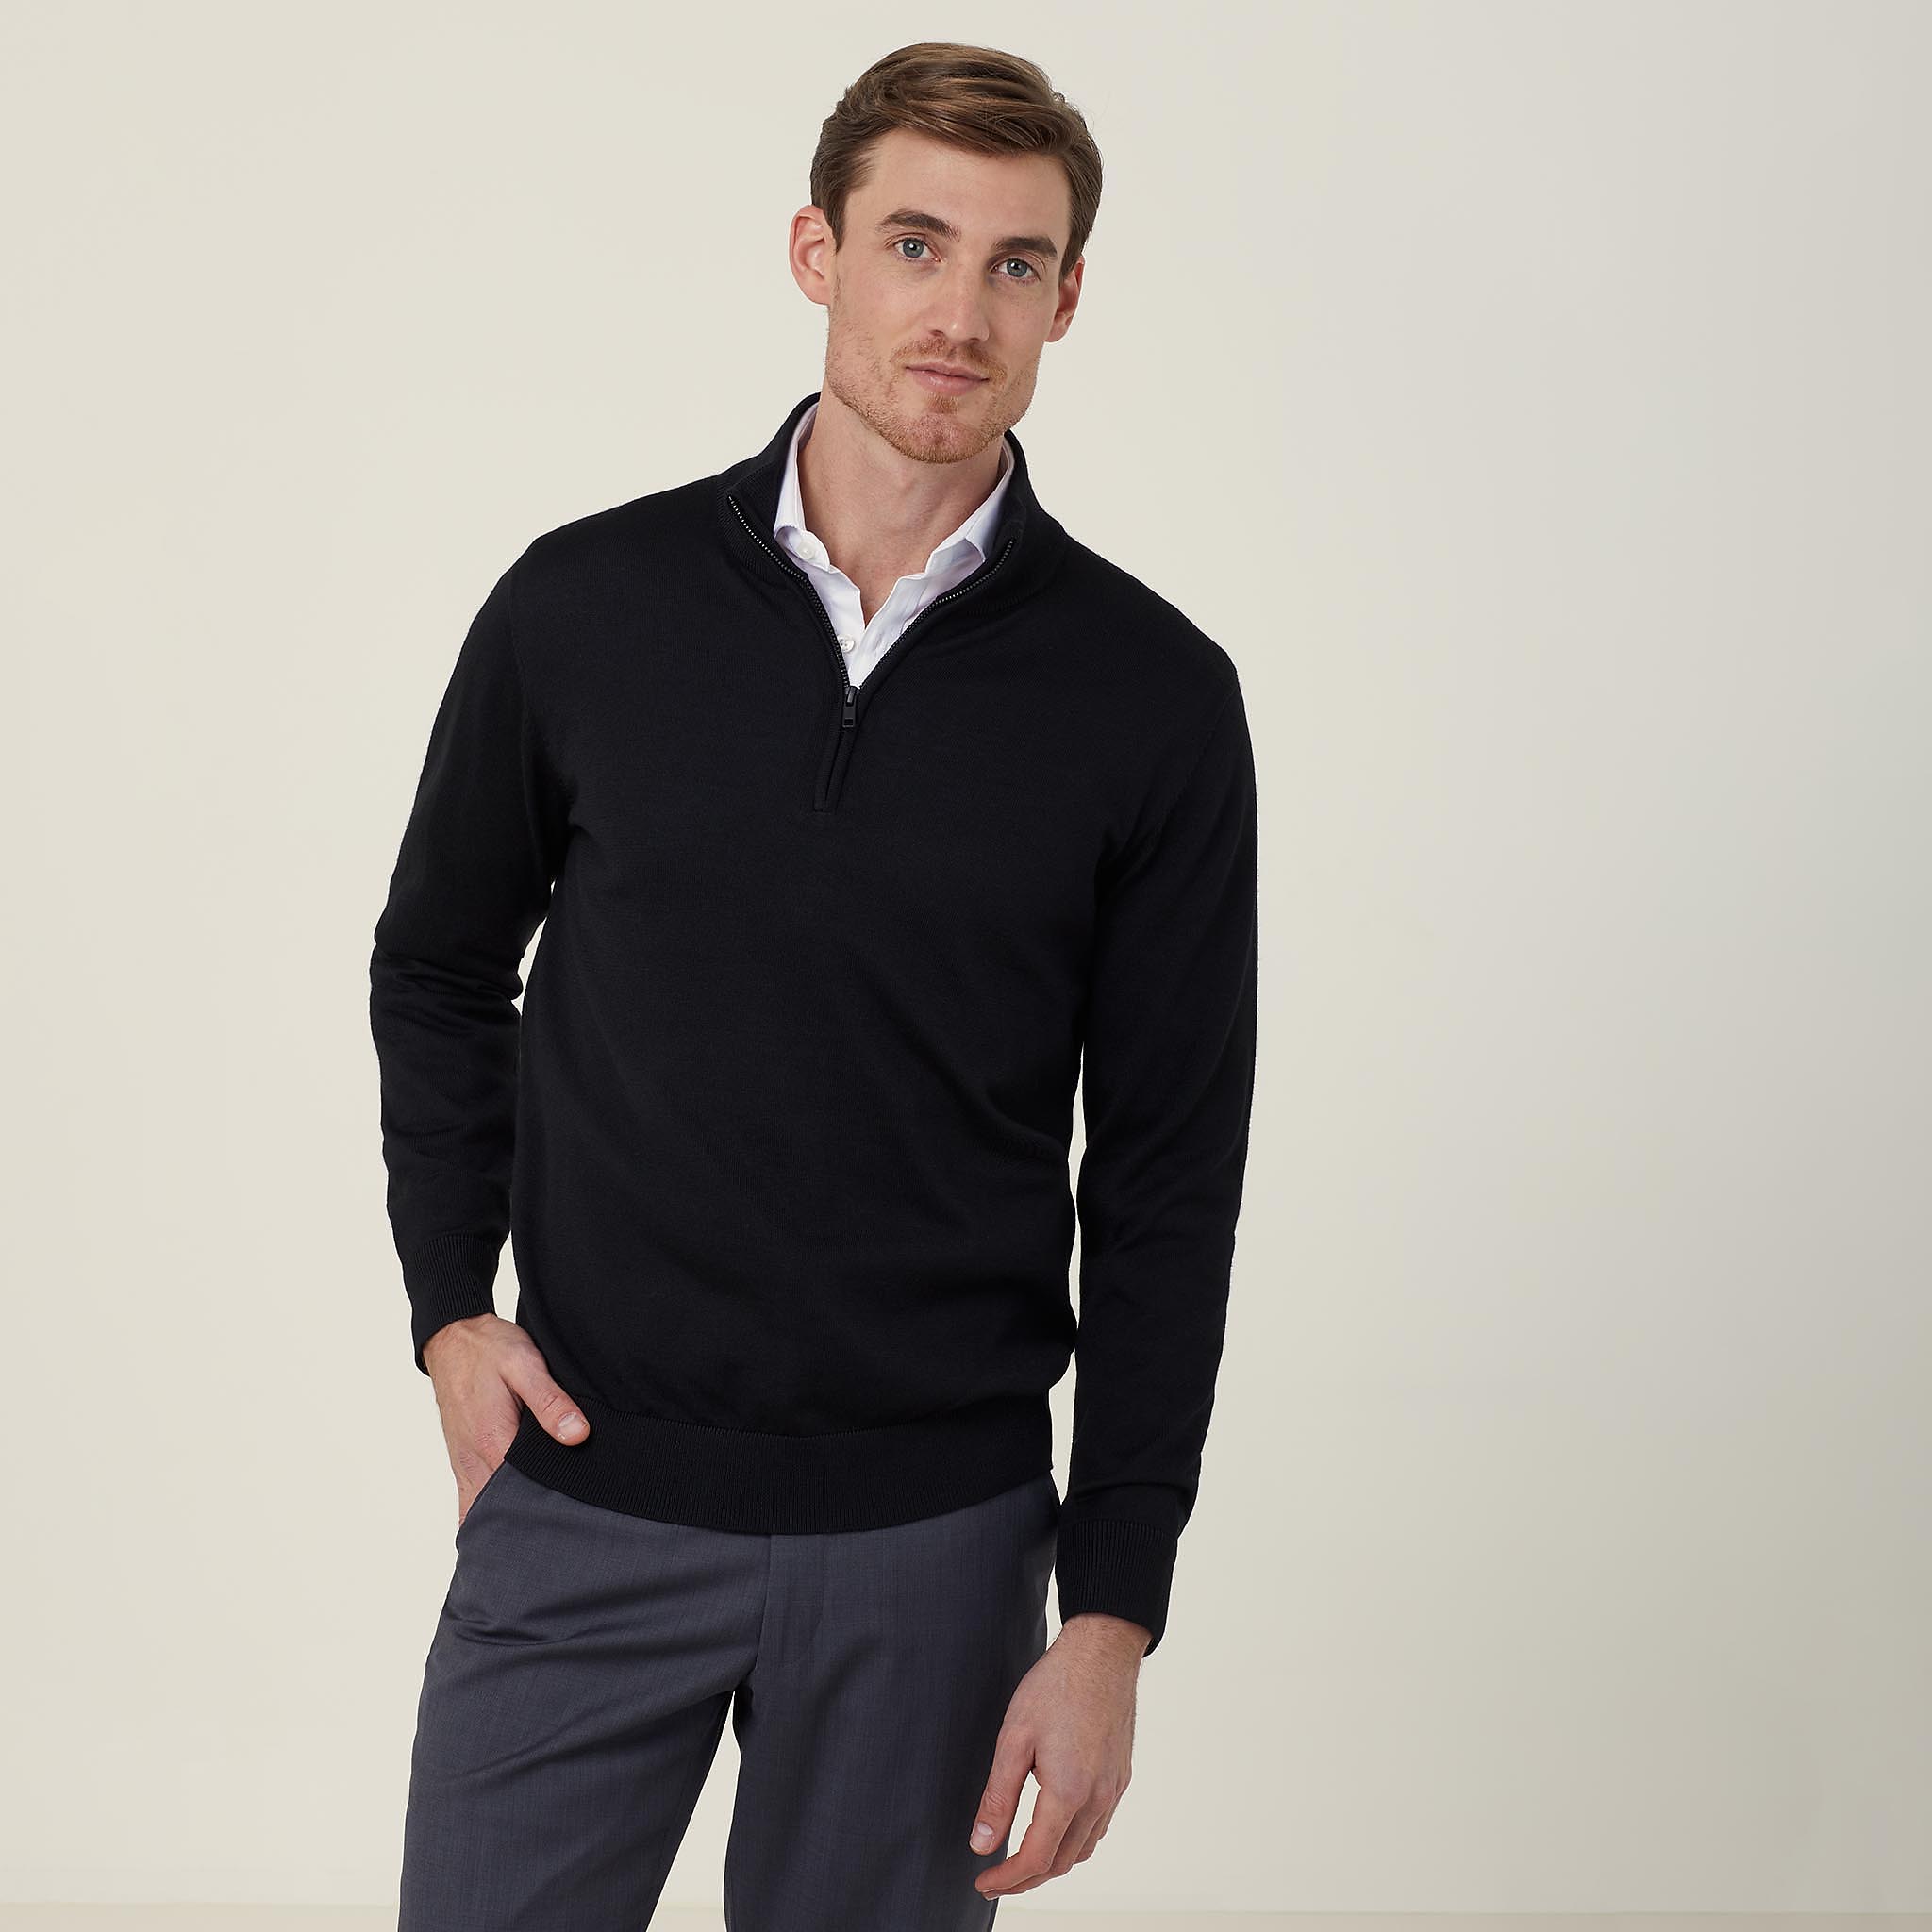 Trevira® Wool Blend Long Sleeve Zip Neck Jumper, black | NNT Uniforms